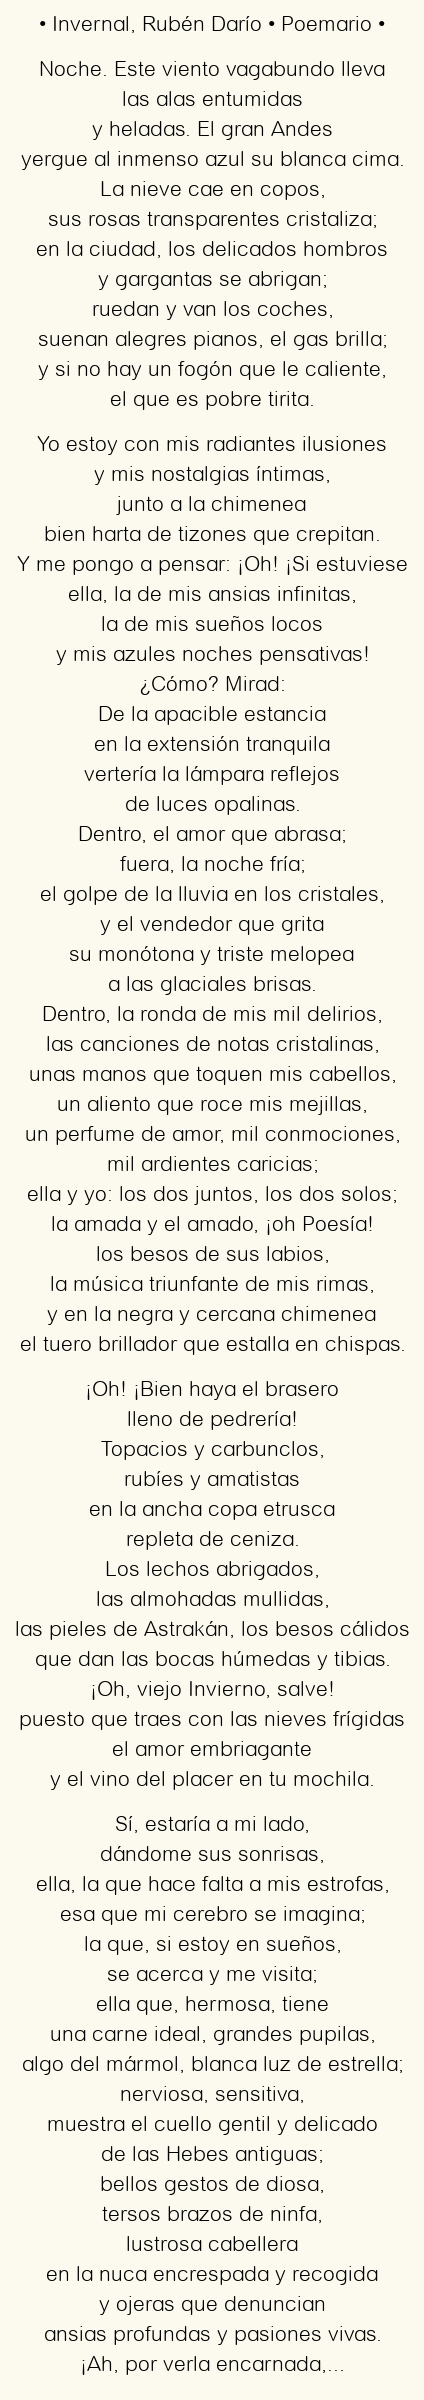 Imagen con el poema Invernal, por Rubén Darío